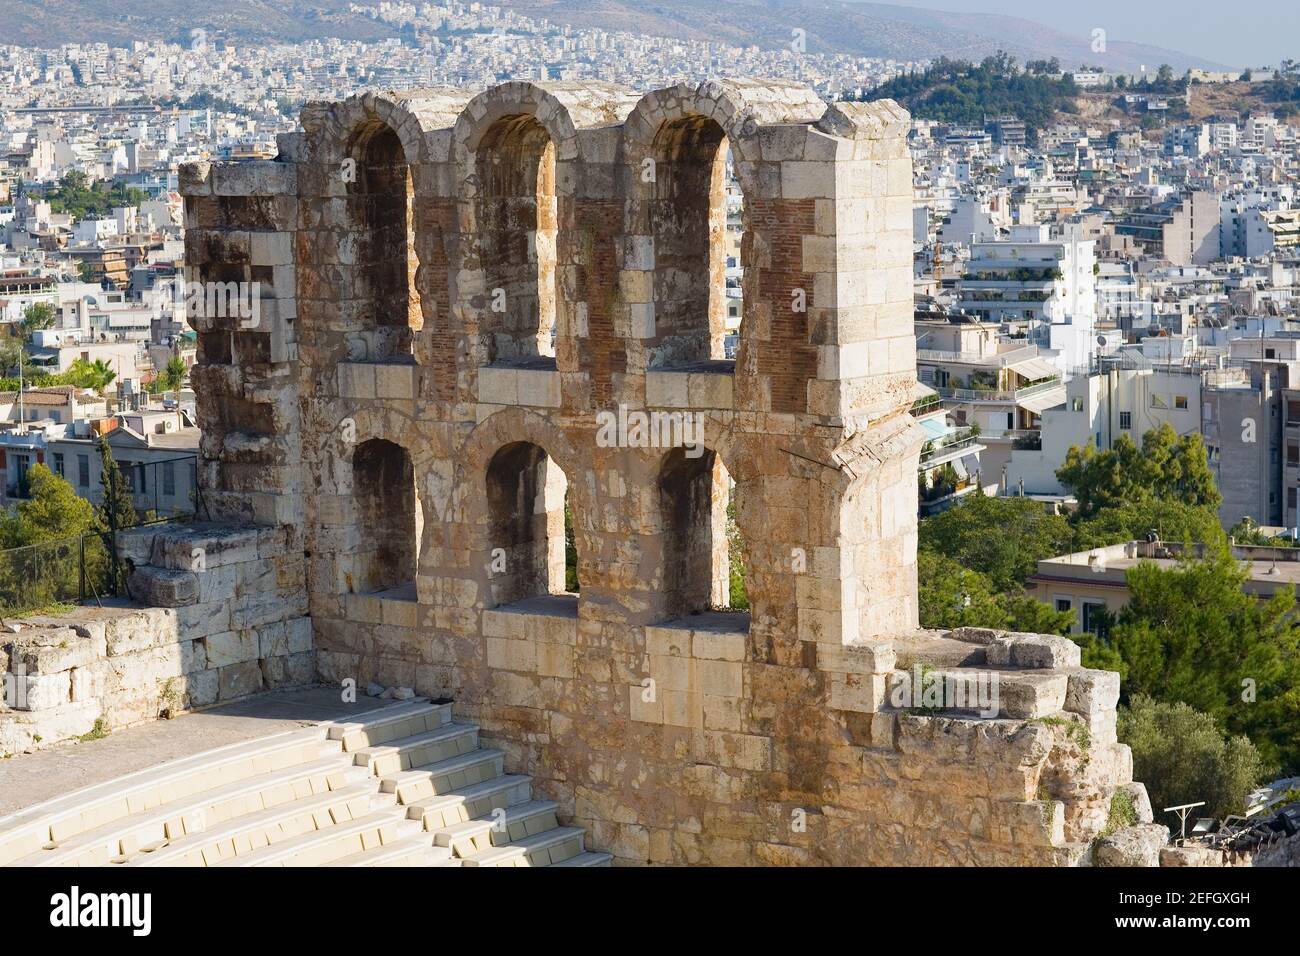 Vista en ángulo alto de las antiguas ruinas de un anfiteatro, Teatro de Herodes Atticus, Acrópolis, Atenas, Grecia Foto de stock